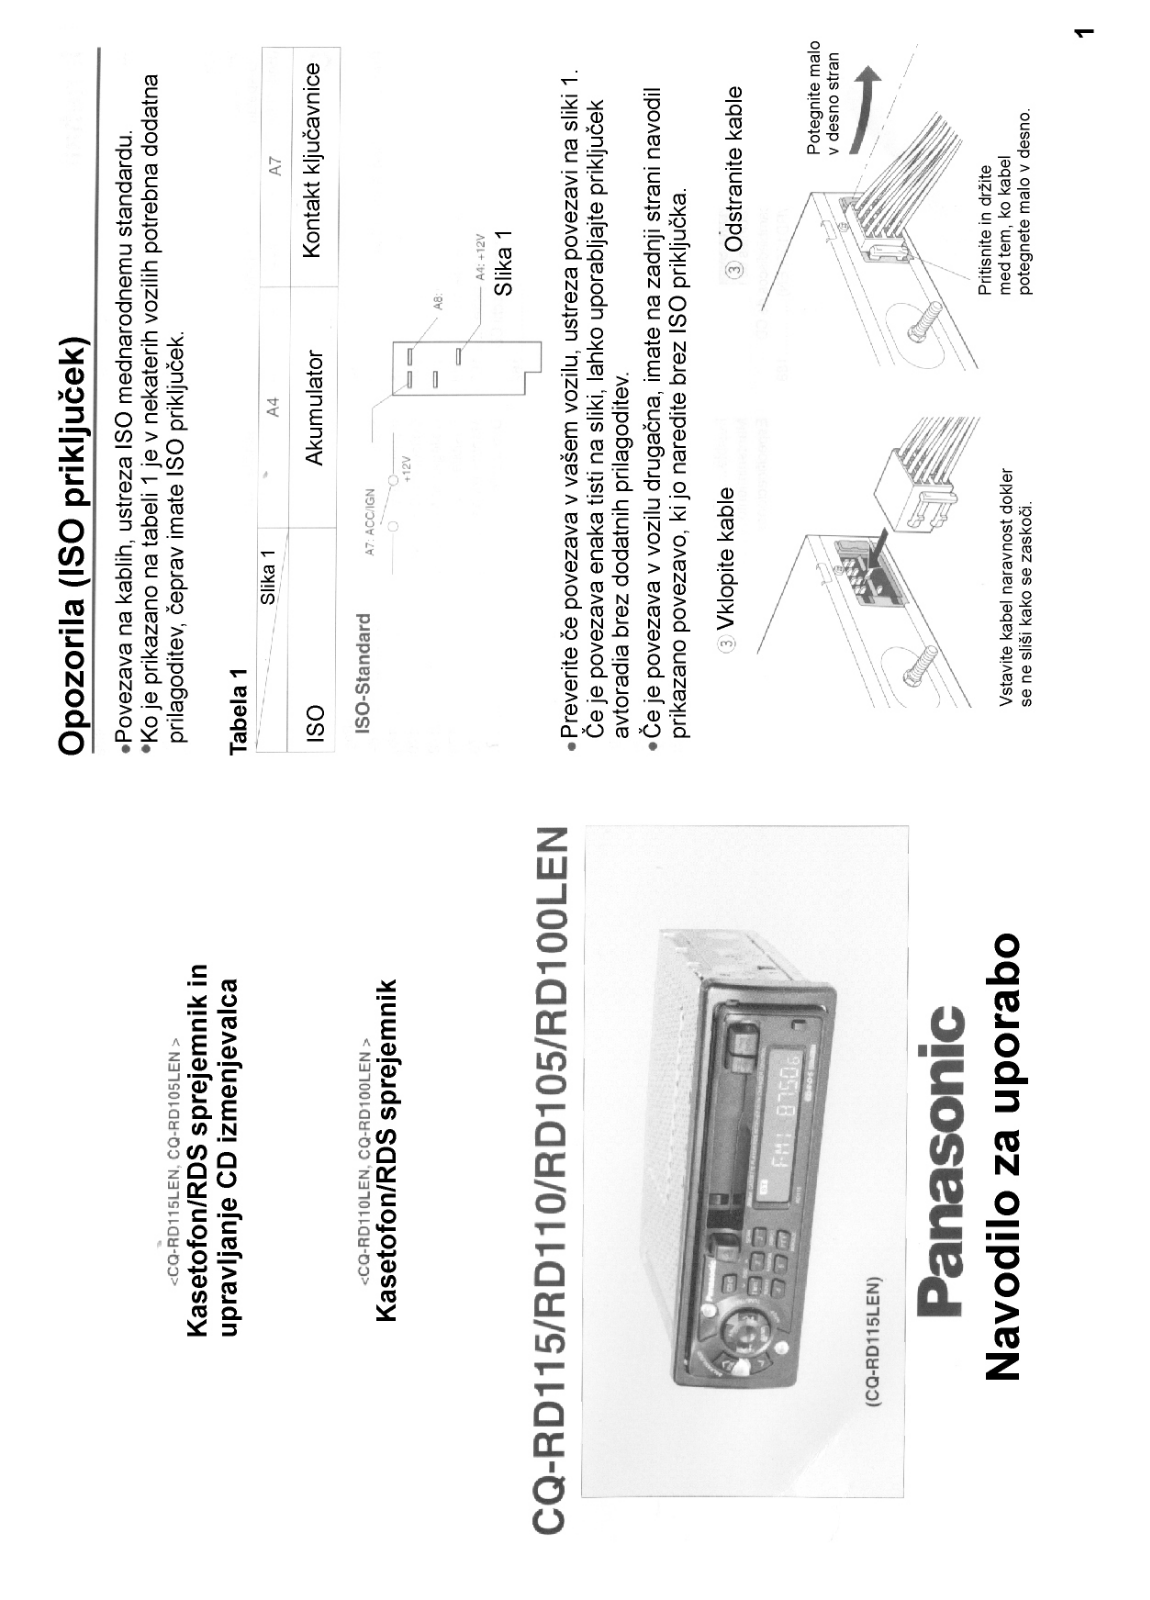 Panasonic CQ-RD115, CQ-RD105, CQ-RD110 User Manual